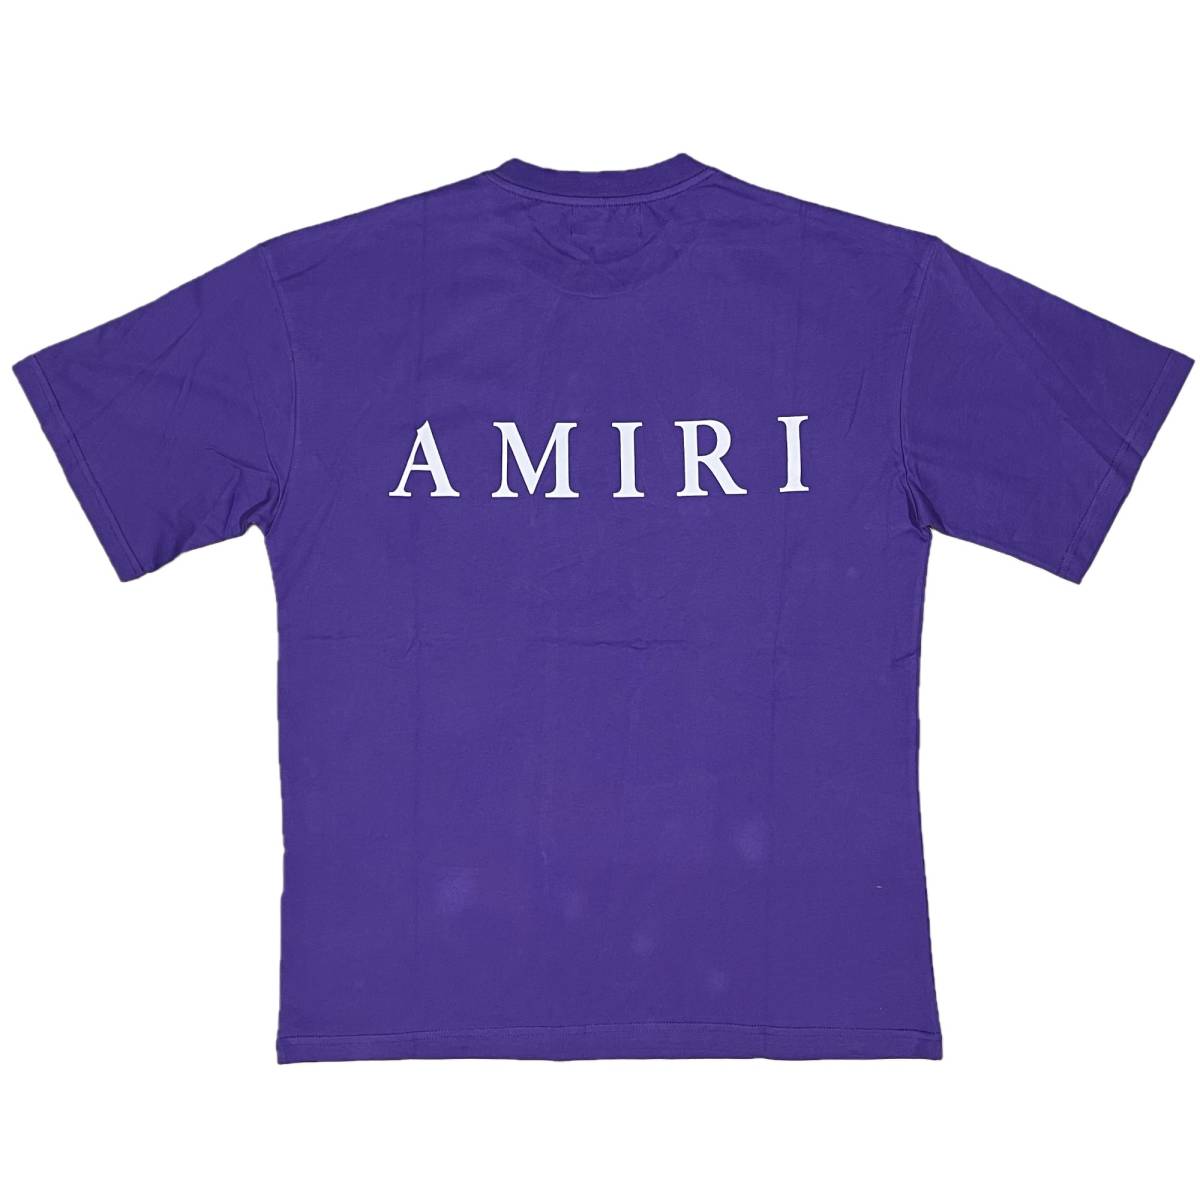 [並行輸入品] AMIRI アミリ MA CORE ロゴ 半袖 Tシャツ (パープル) (S)_画像2